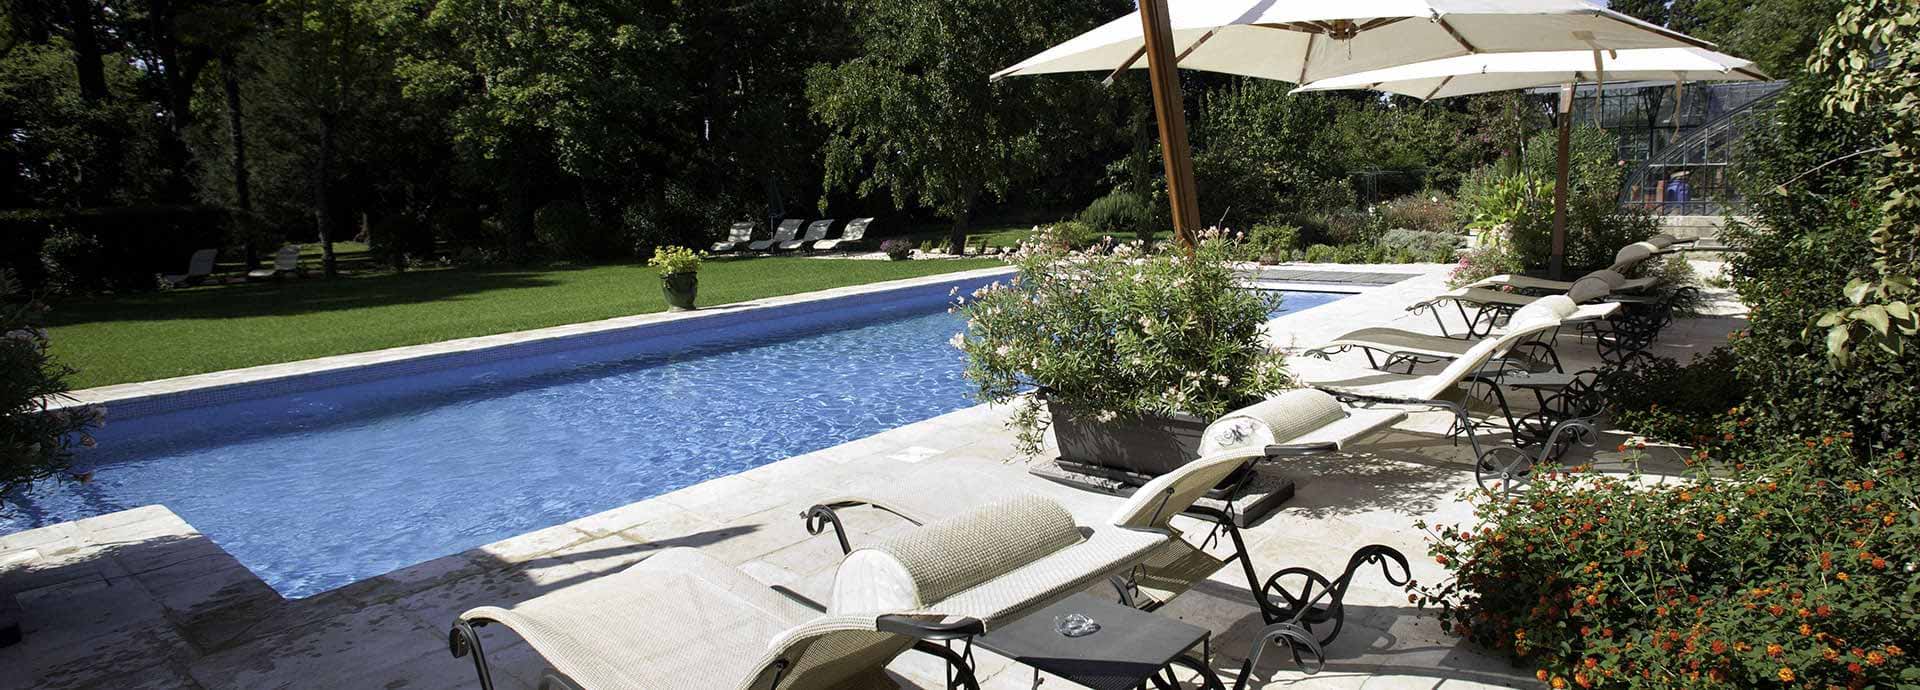 Piscine en accès libre avec terrasse privée et mobilier de jardin, de la maison d’hôte Silène du domaine la Vernède